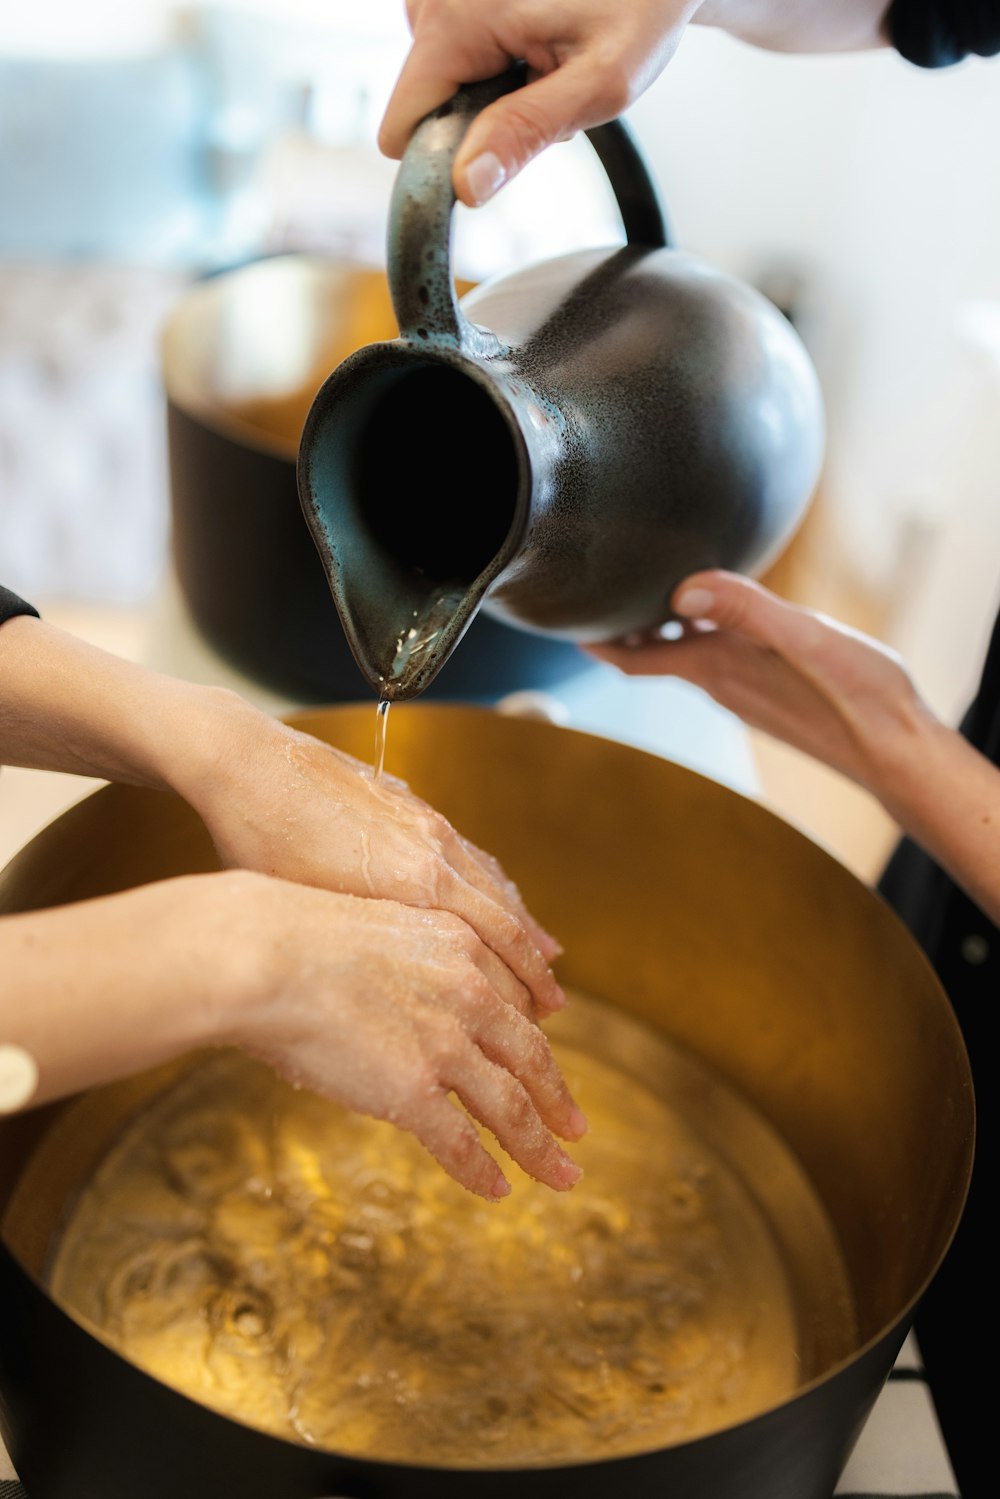 hands pouring liquid into a pot